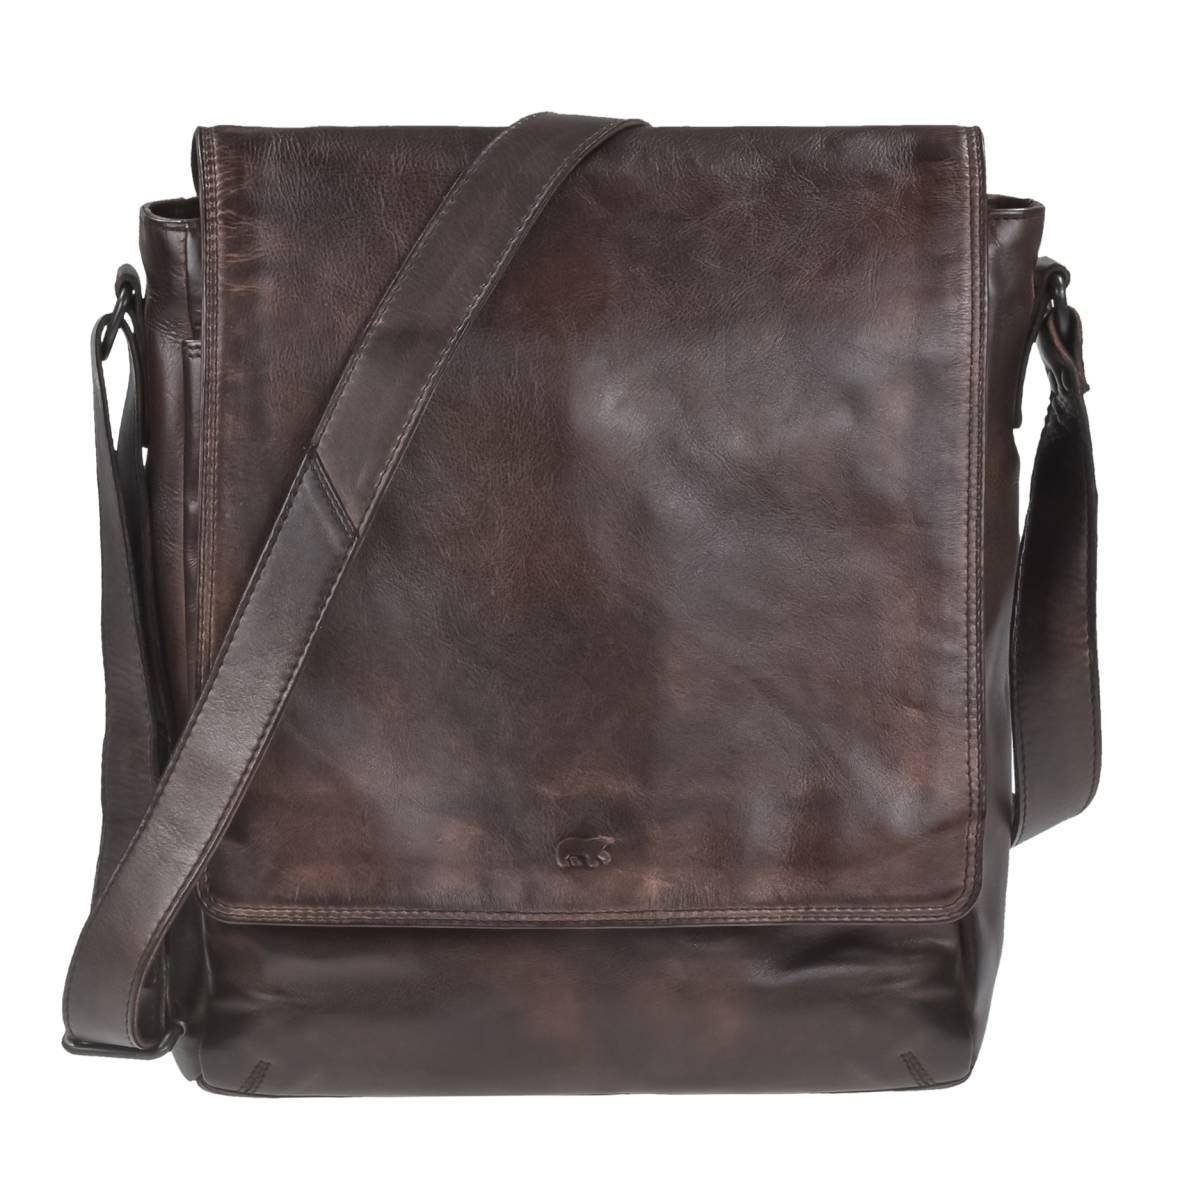 Bear Design Leder Dustin, weiches knautschiges Schultertasche Bag, brown Messenger 32x34cm, Umhängetasche